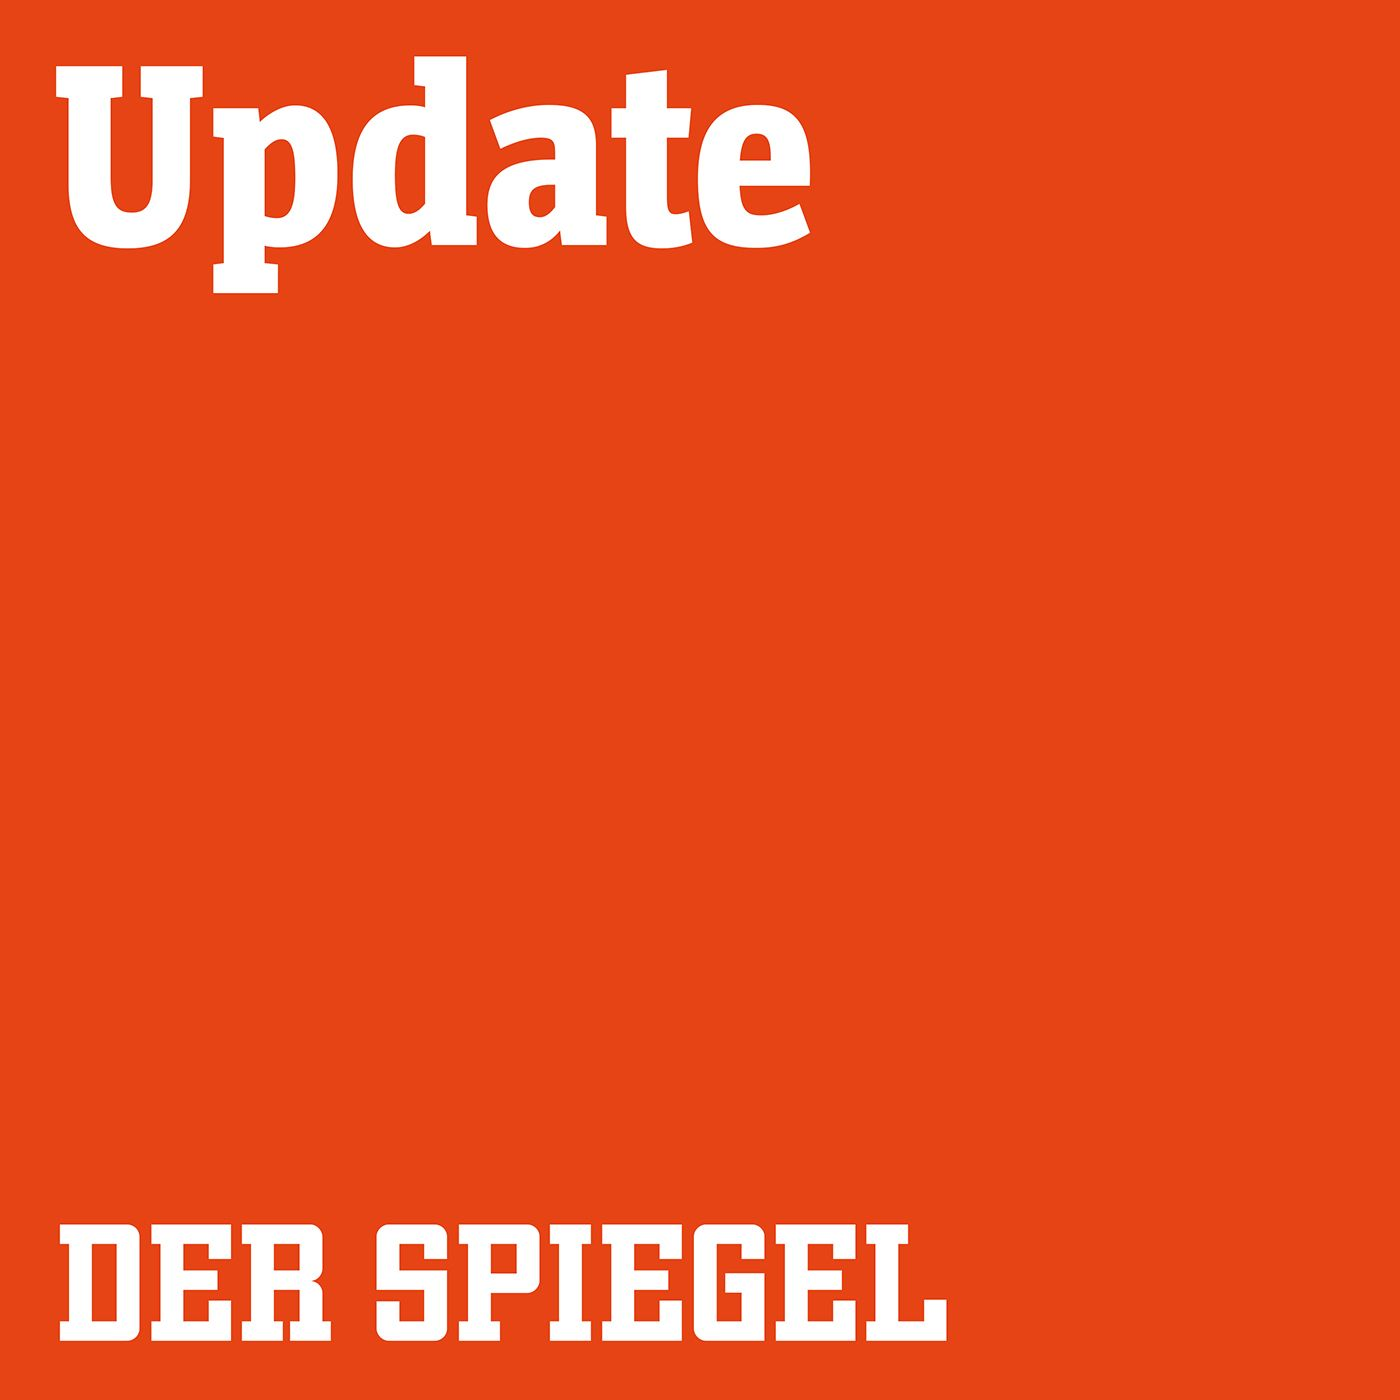 30.05. – der Wochenrückblick: Kontaktbeschränkung, VW-Urteil, Lufthansa-Rettungspaket